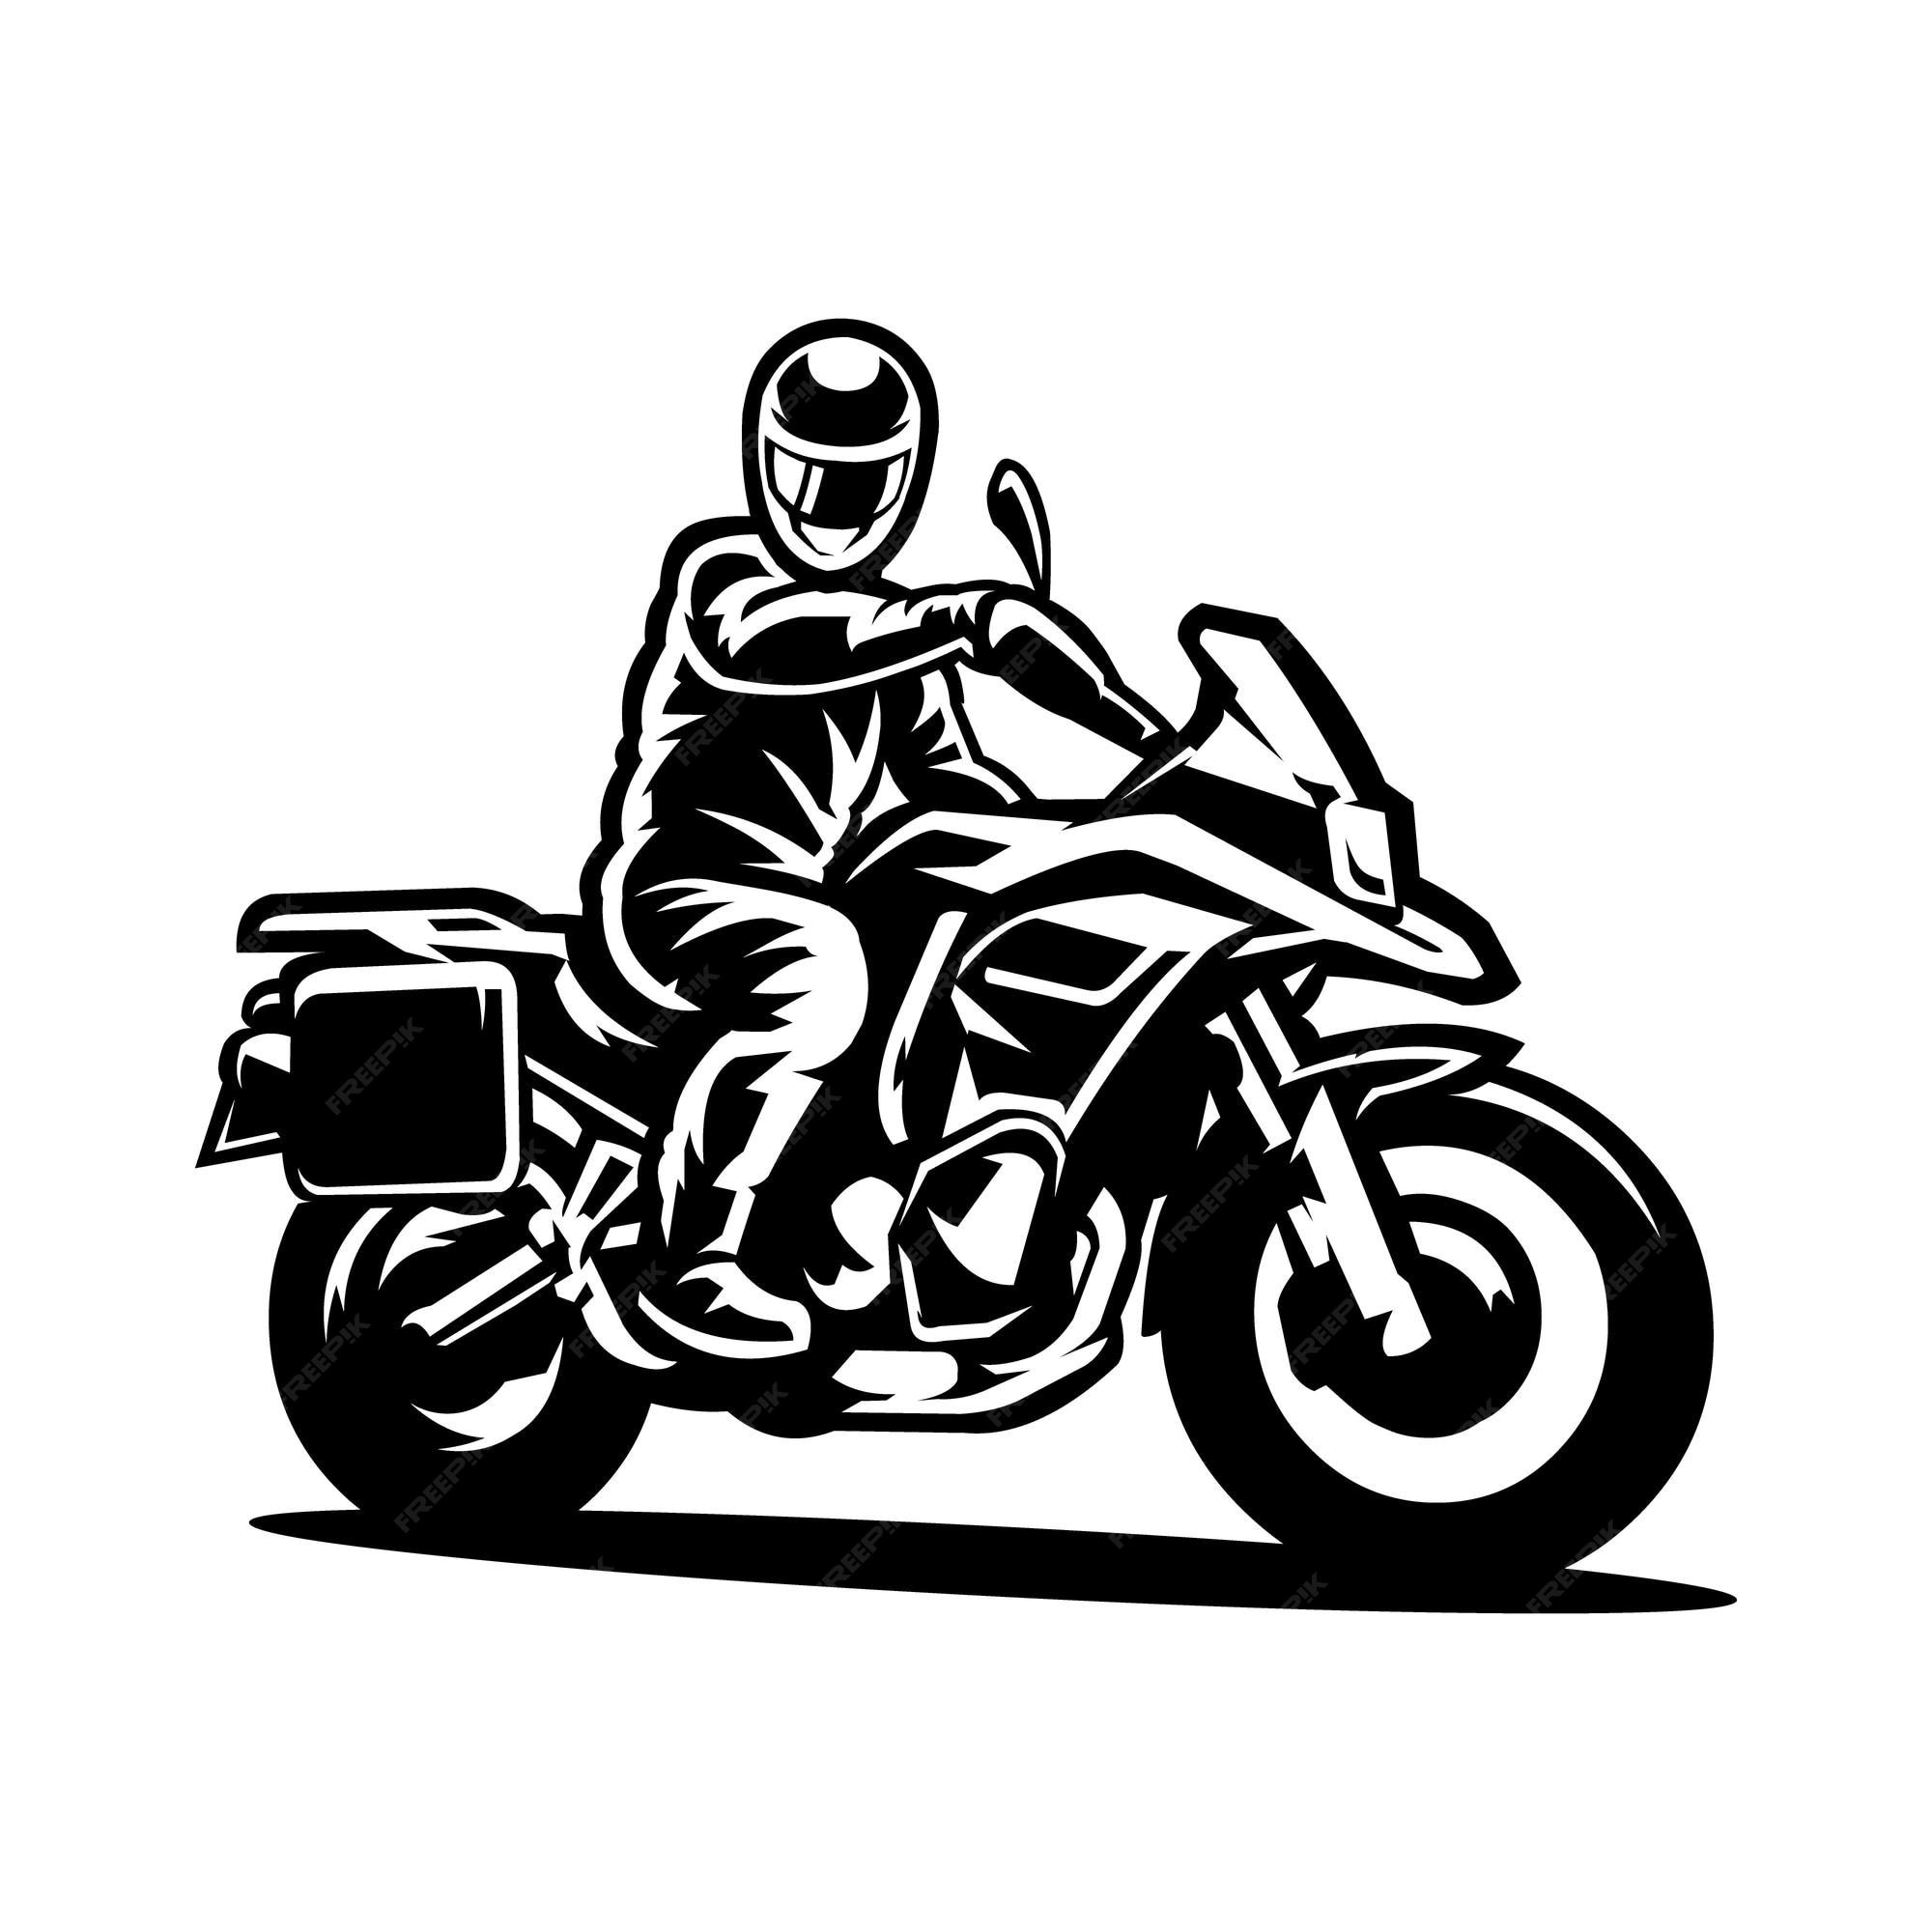 Silhueta do motociclista ilustração do vetor. Ilustração de ciclo - 34298855